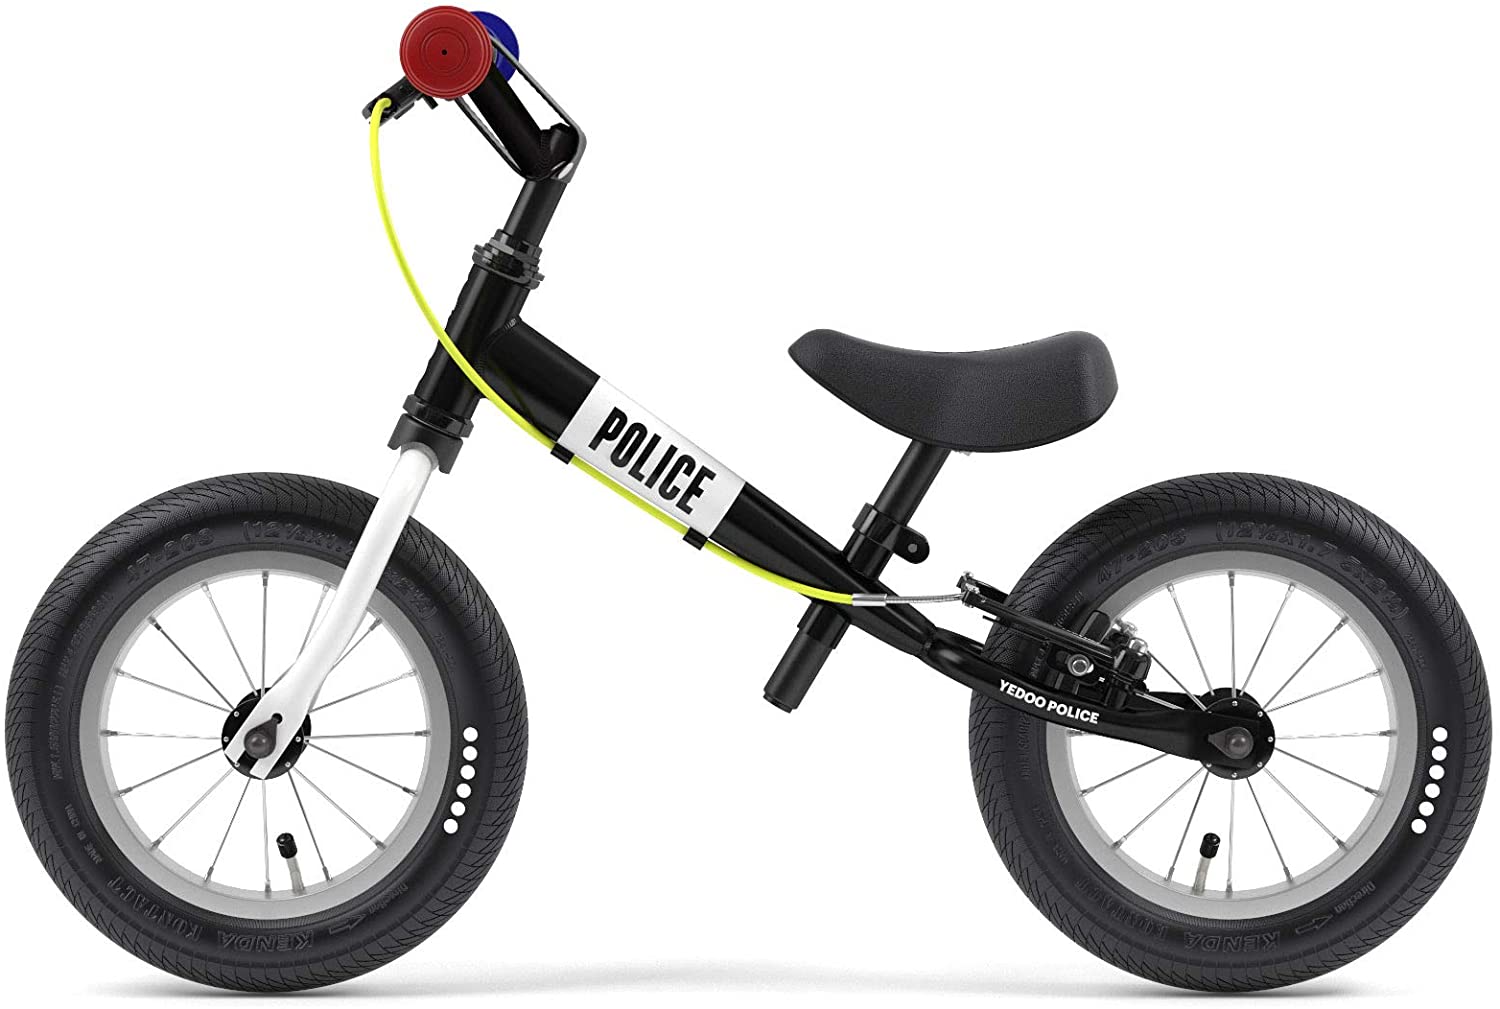 YEDOO  Police - Laufrad für Kinder ab 1,5 Jahre, ab 85 cm Körperhöhe, mit Luftreifen